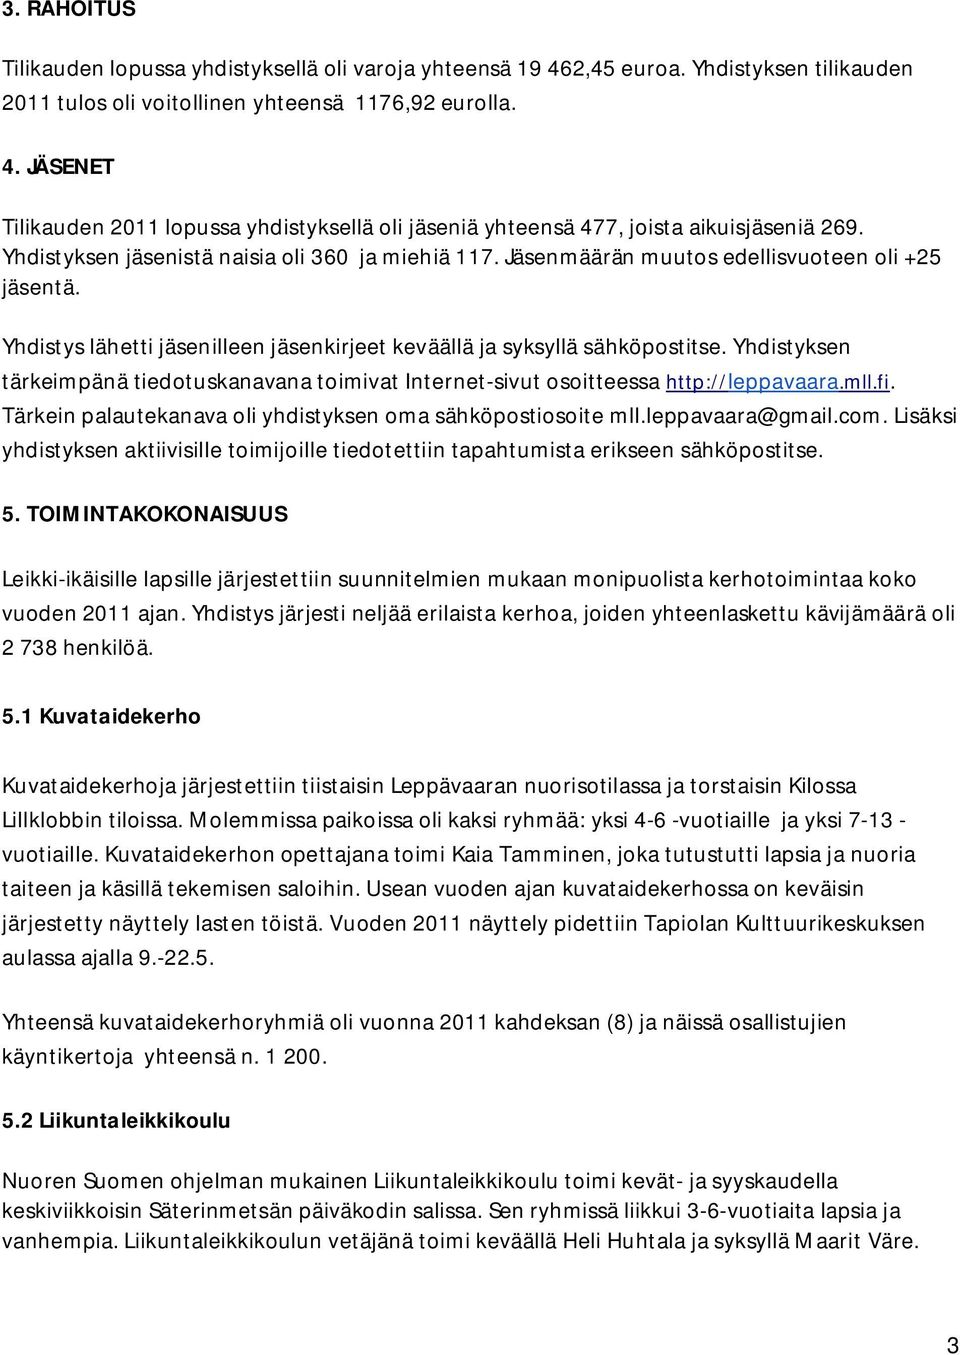 Yhdistyksen tärkeimpänä tiedotuskanavana toimivat Internet-sivut osoitteessa http://leppavaara.mll.fi. Tärkein palautekanava oli yhdistyksen oma sähköpostiosoite mll.leppavaara@gmail.com.